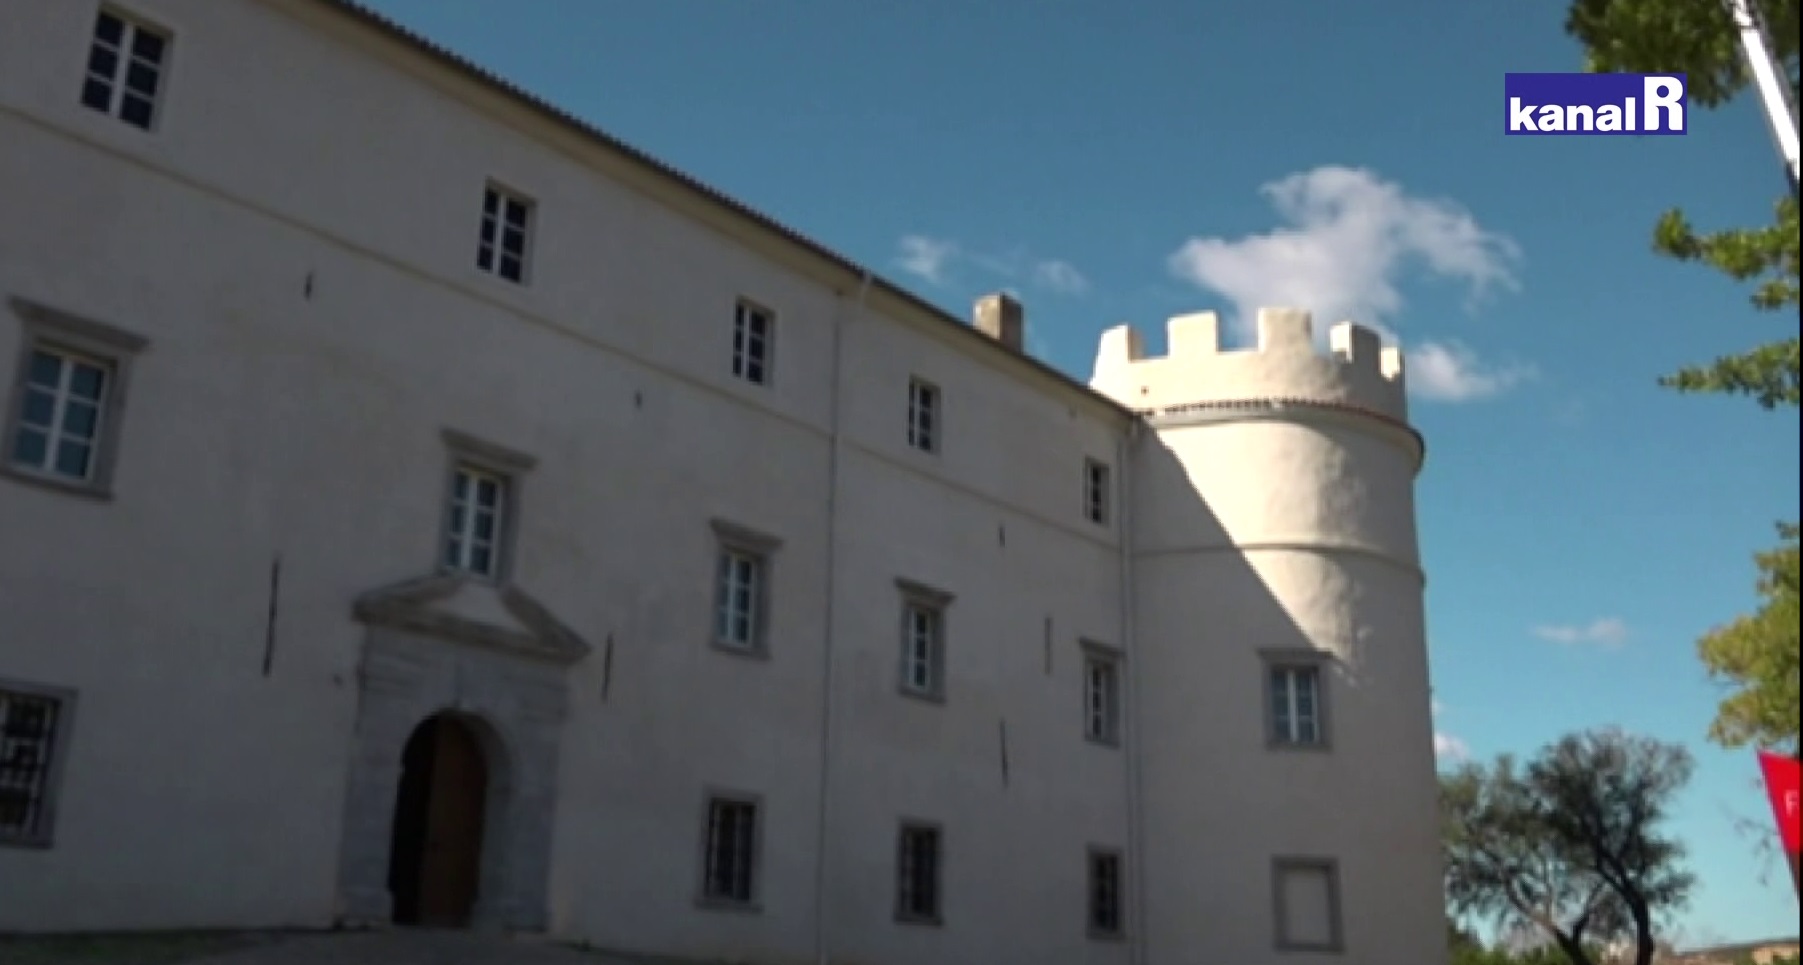 Kraljevica želi otvoriti Interpretacijski centar Hrvatska vinska kuća